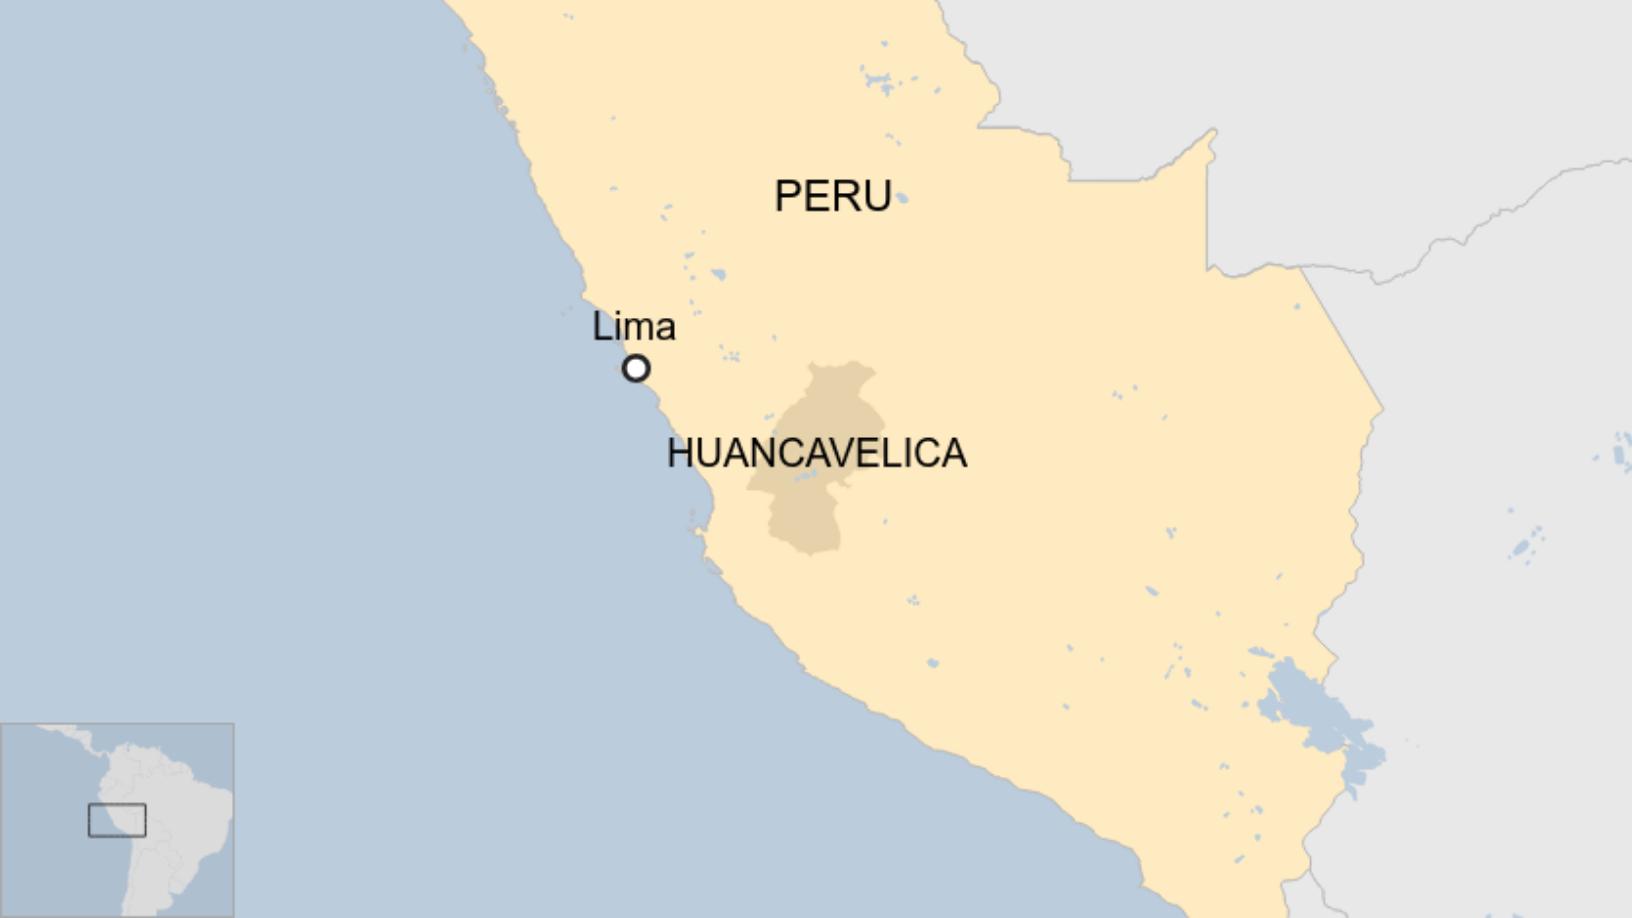 Map: Huancavelica region of Peru 